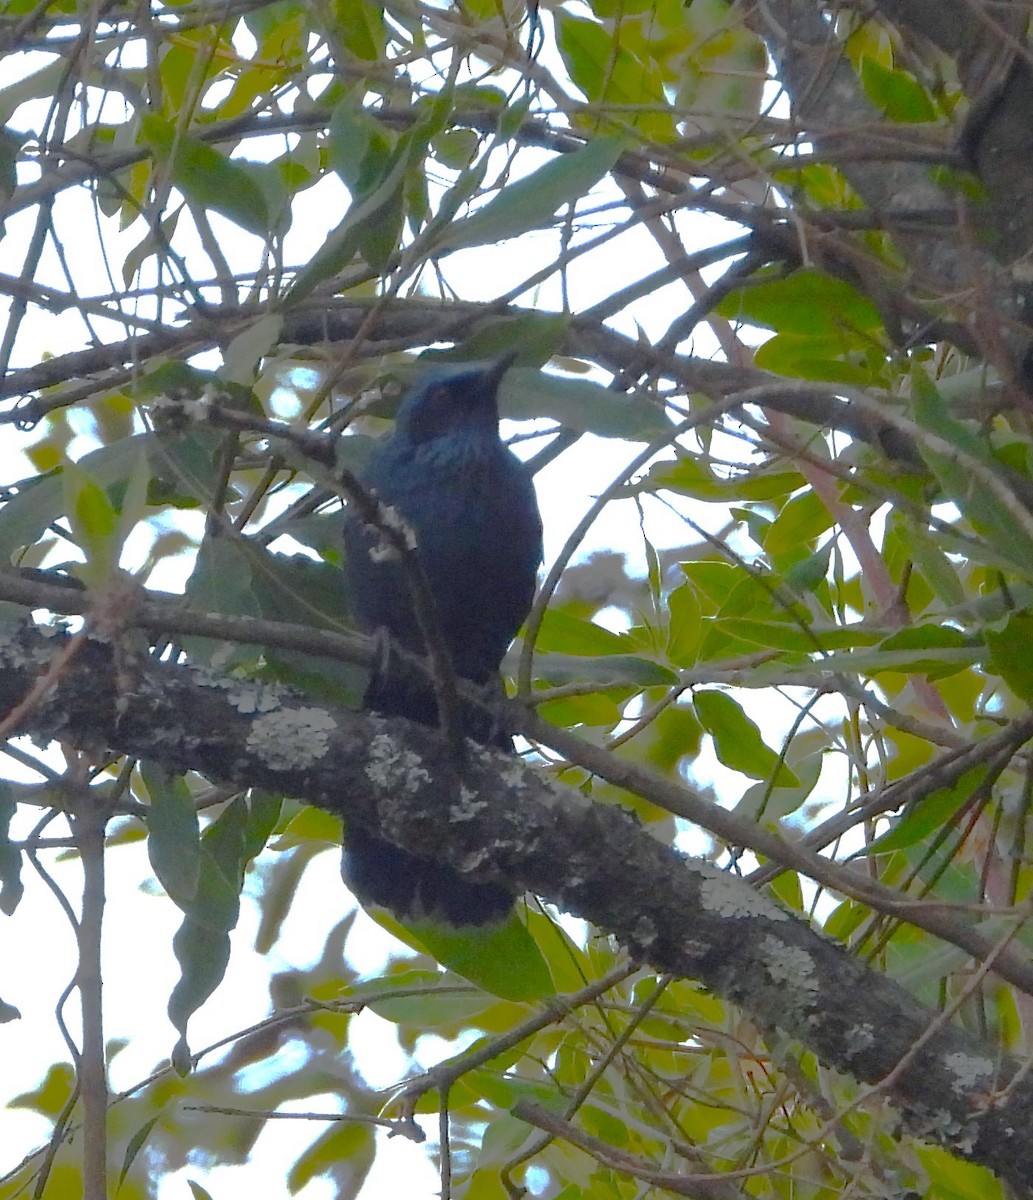 Blue Mockingbird - Guadalupe Esquivel Uribe